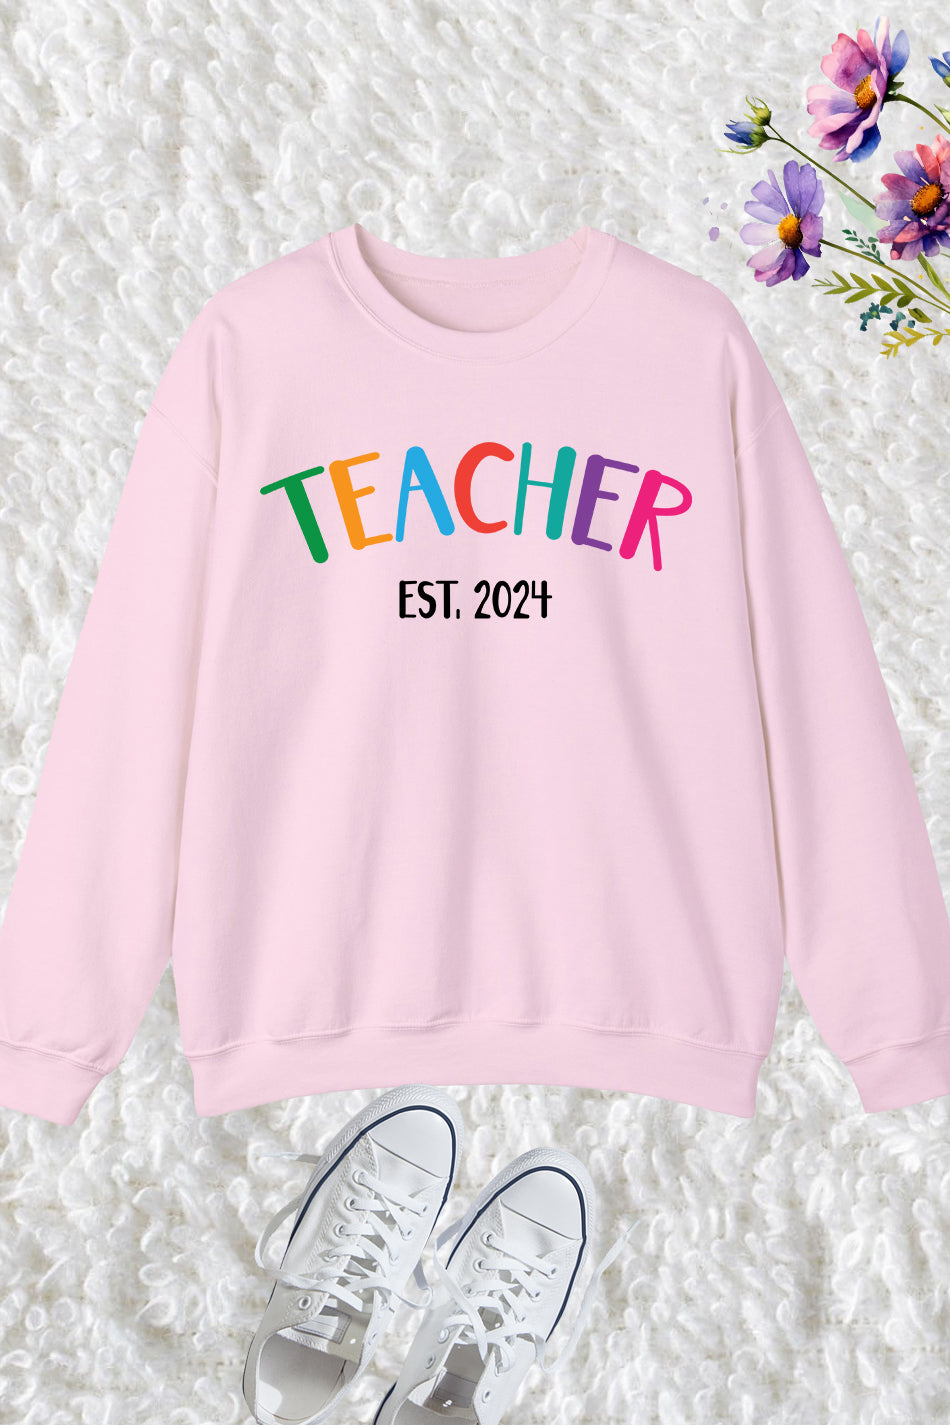 Teacher Est 2024 Sweatshirt New Teacher Gift